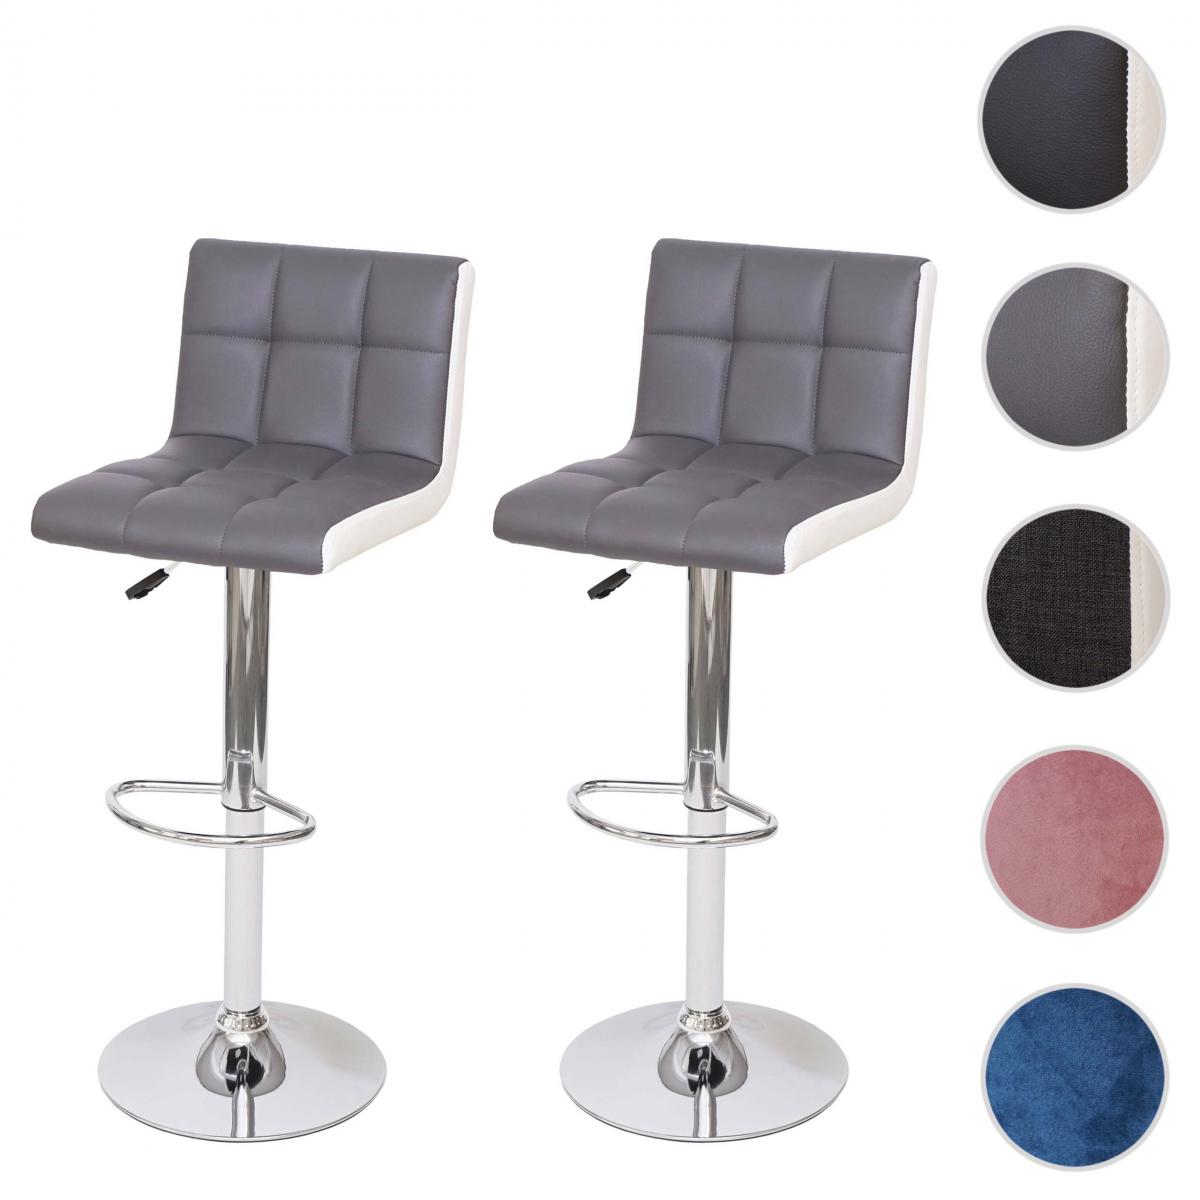 Mendler - 2x Tabouret de bar HWC-G87, chaise bar/comptoir, réglable en hauteur ~ similicuir gris-blanc, pied chromé - Tabourets